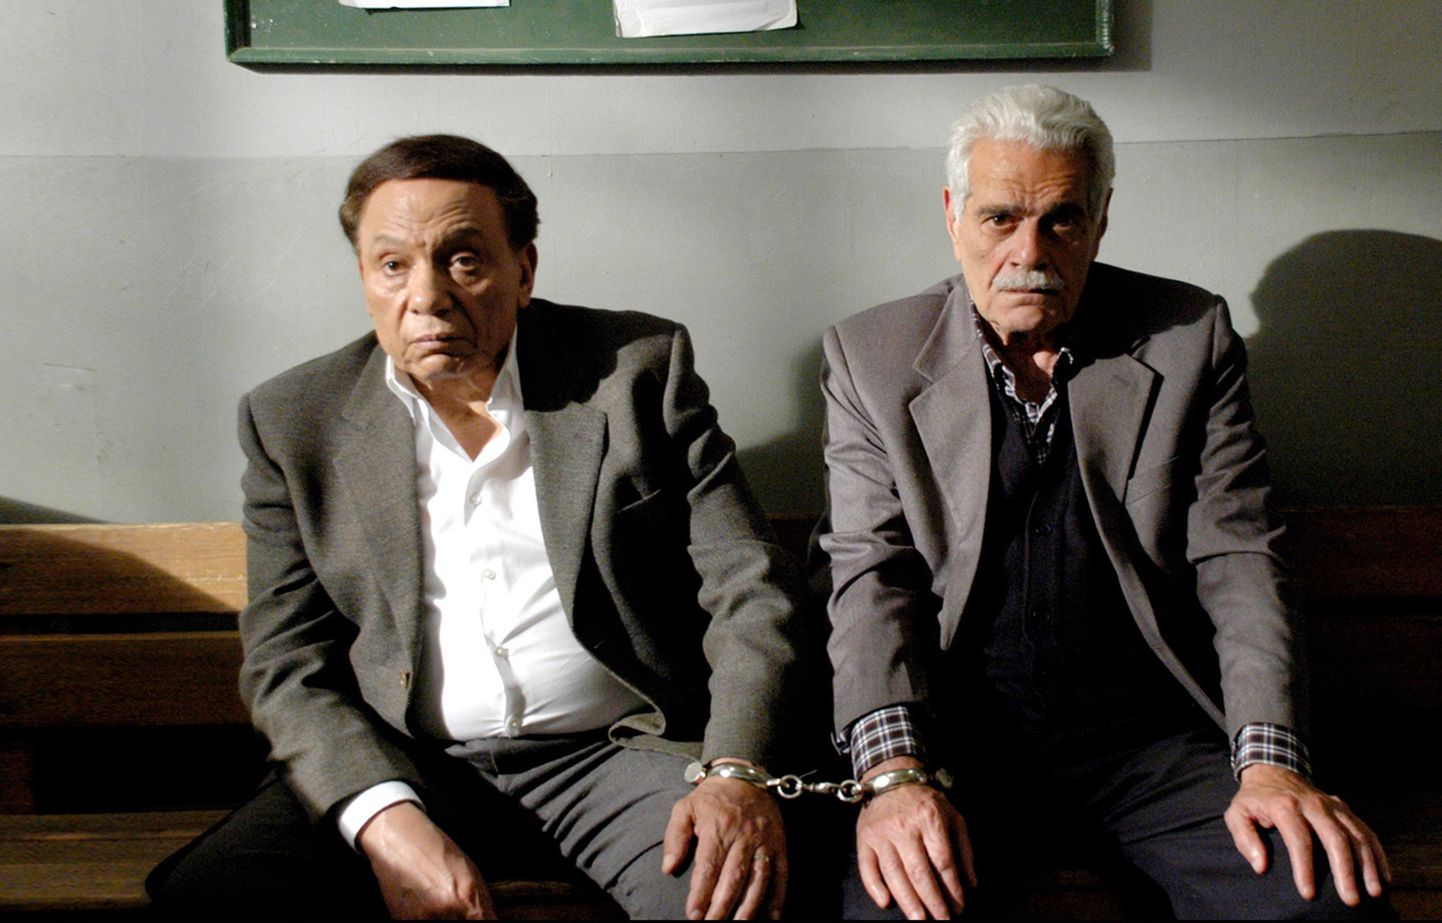 Egiptuse koomik Adel Imam (vasakul) koos kolleeg Omar Sharifiga filmivõtetel.